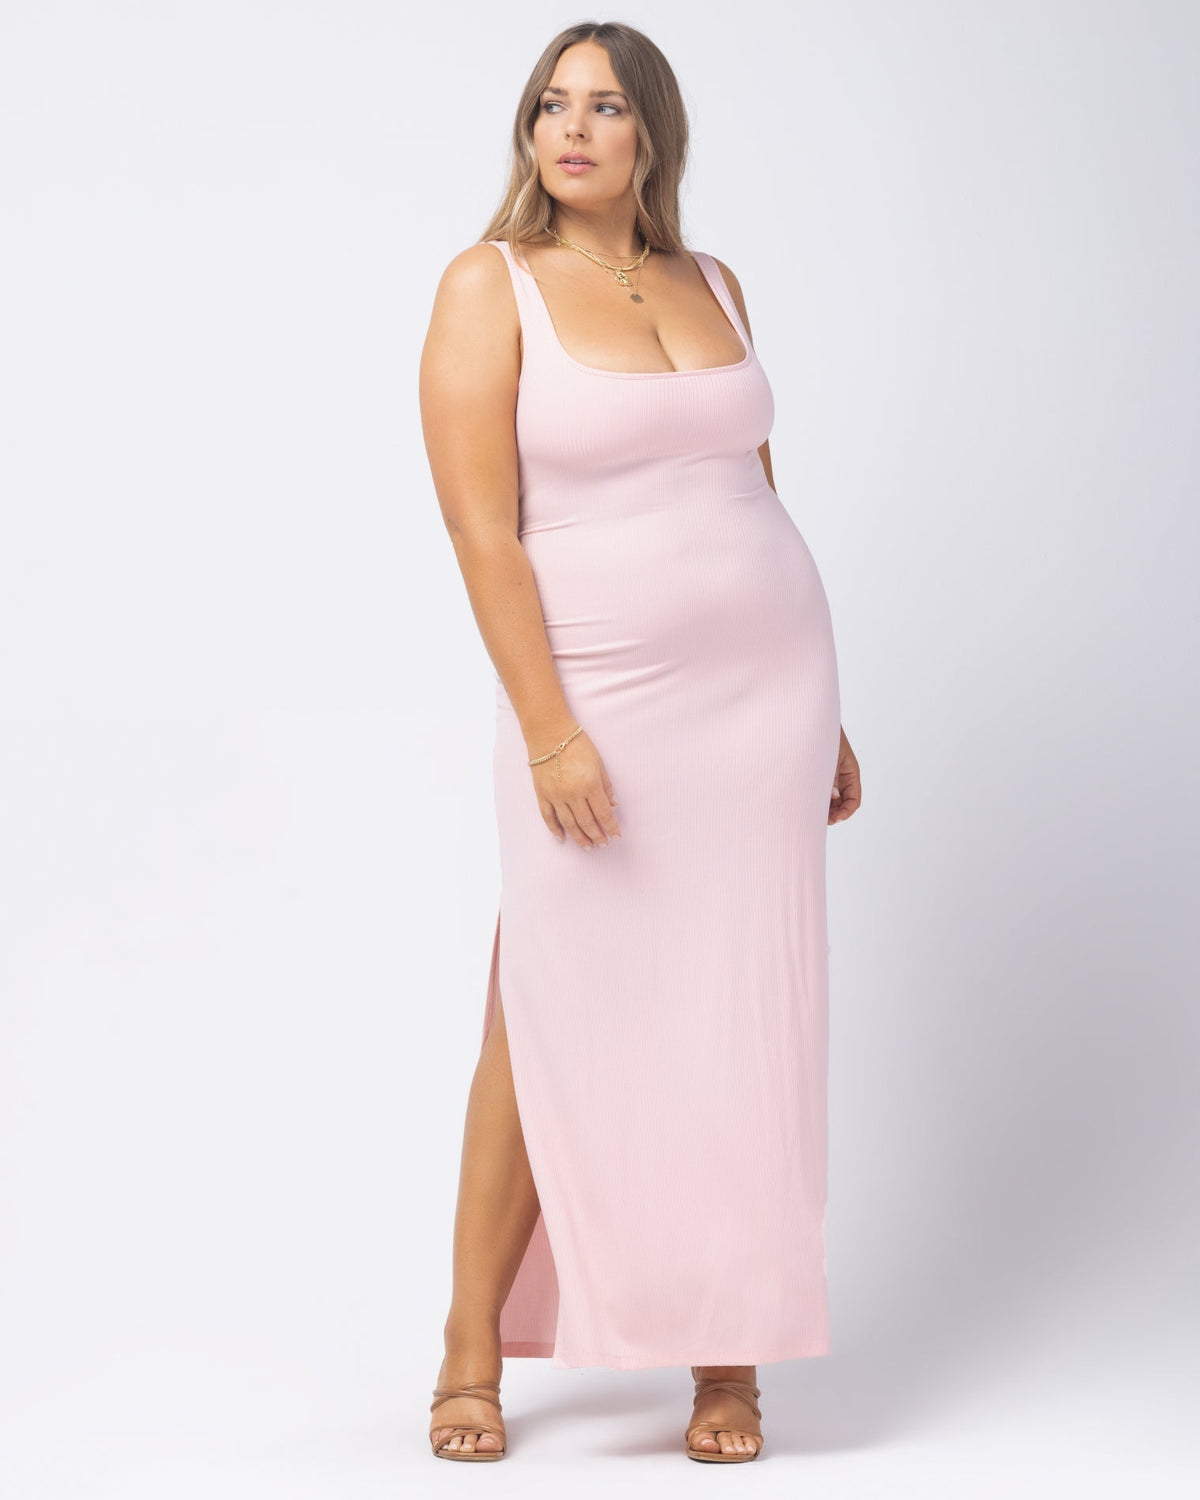 Mara Dress - Rose Quartz Rose Quartz | Model: Ali (size: XL)